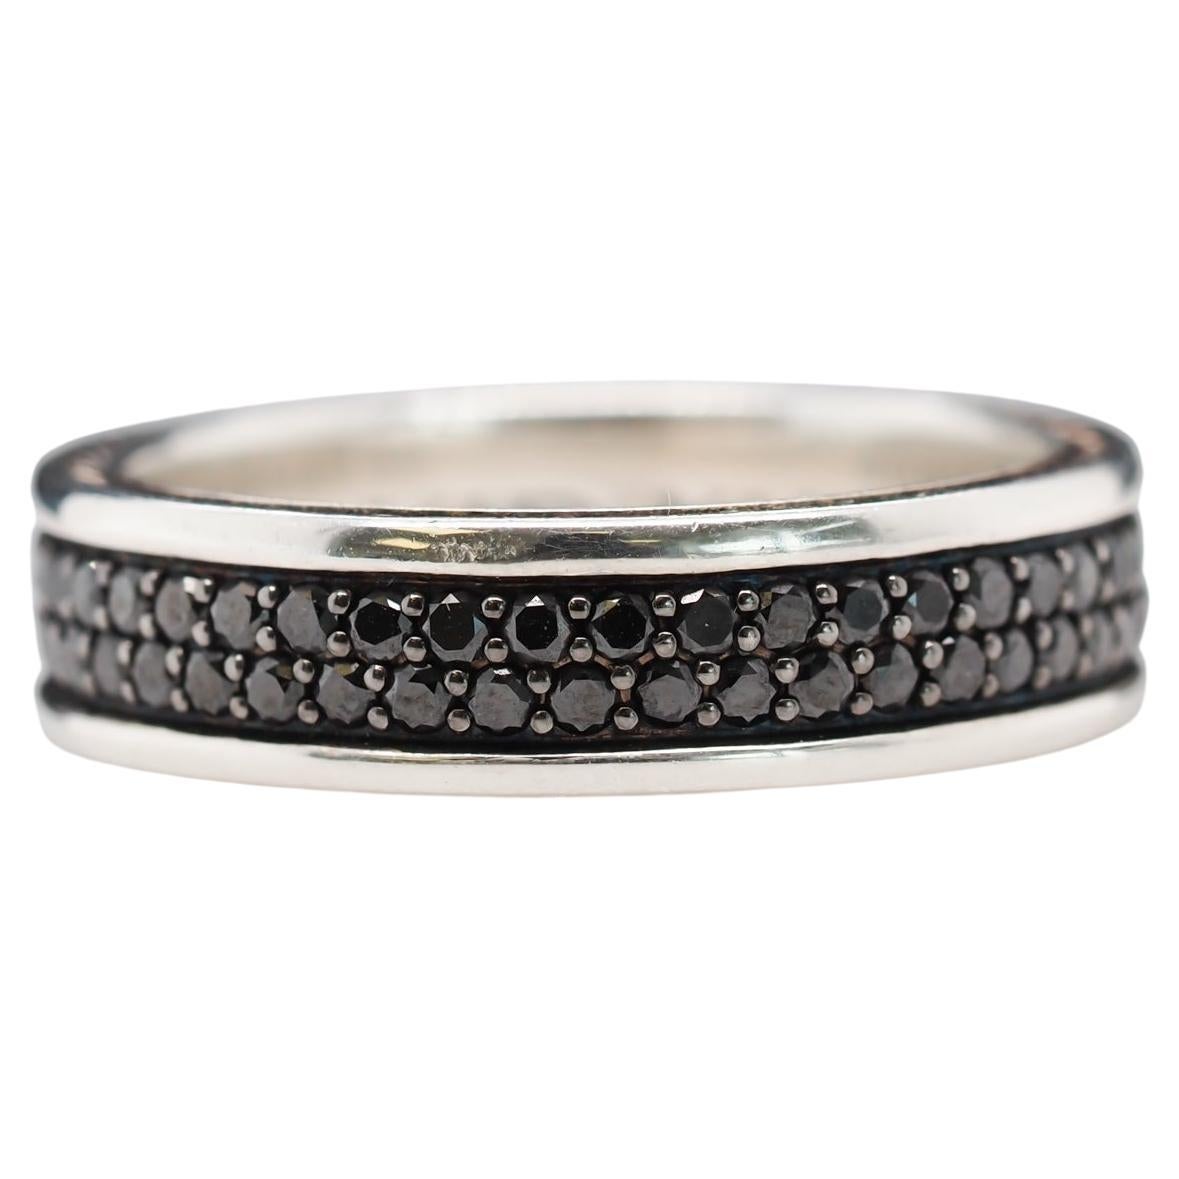 Zweireihiger David Yurman-Ring aus Sterlingsilber mit schwarzen Diamanten, stromlinienförmig